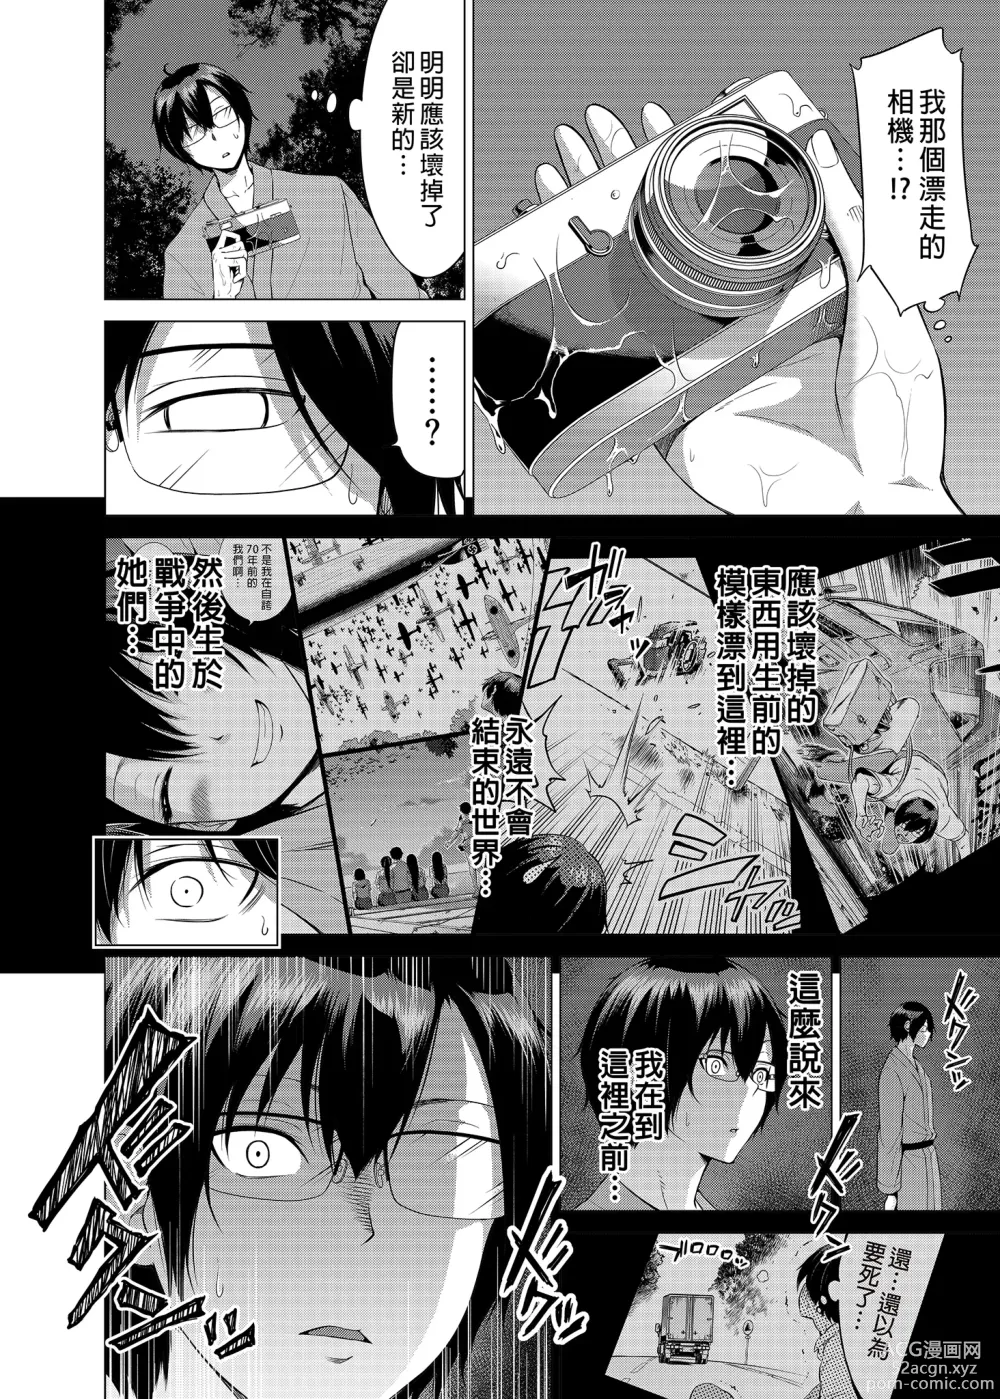 Page 49 of manga nanaka no rakuen5